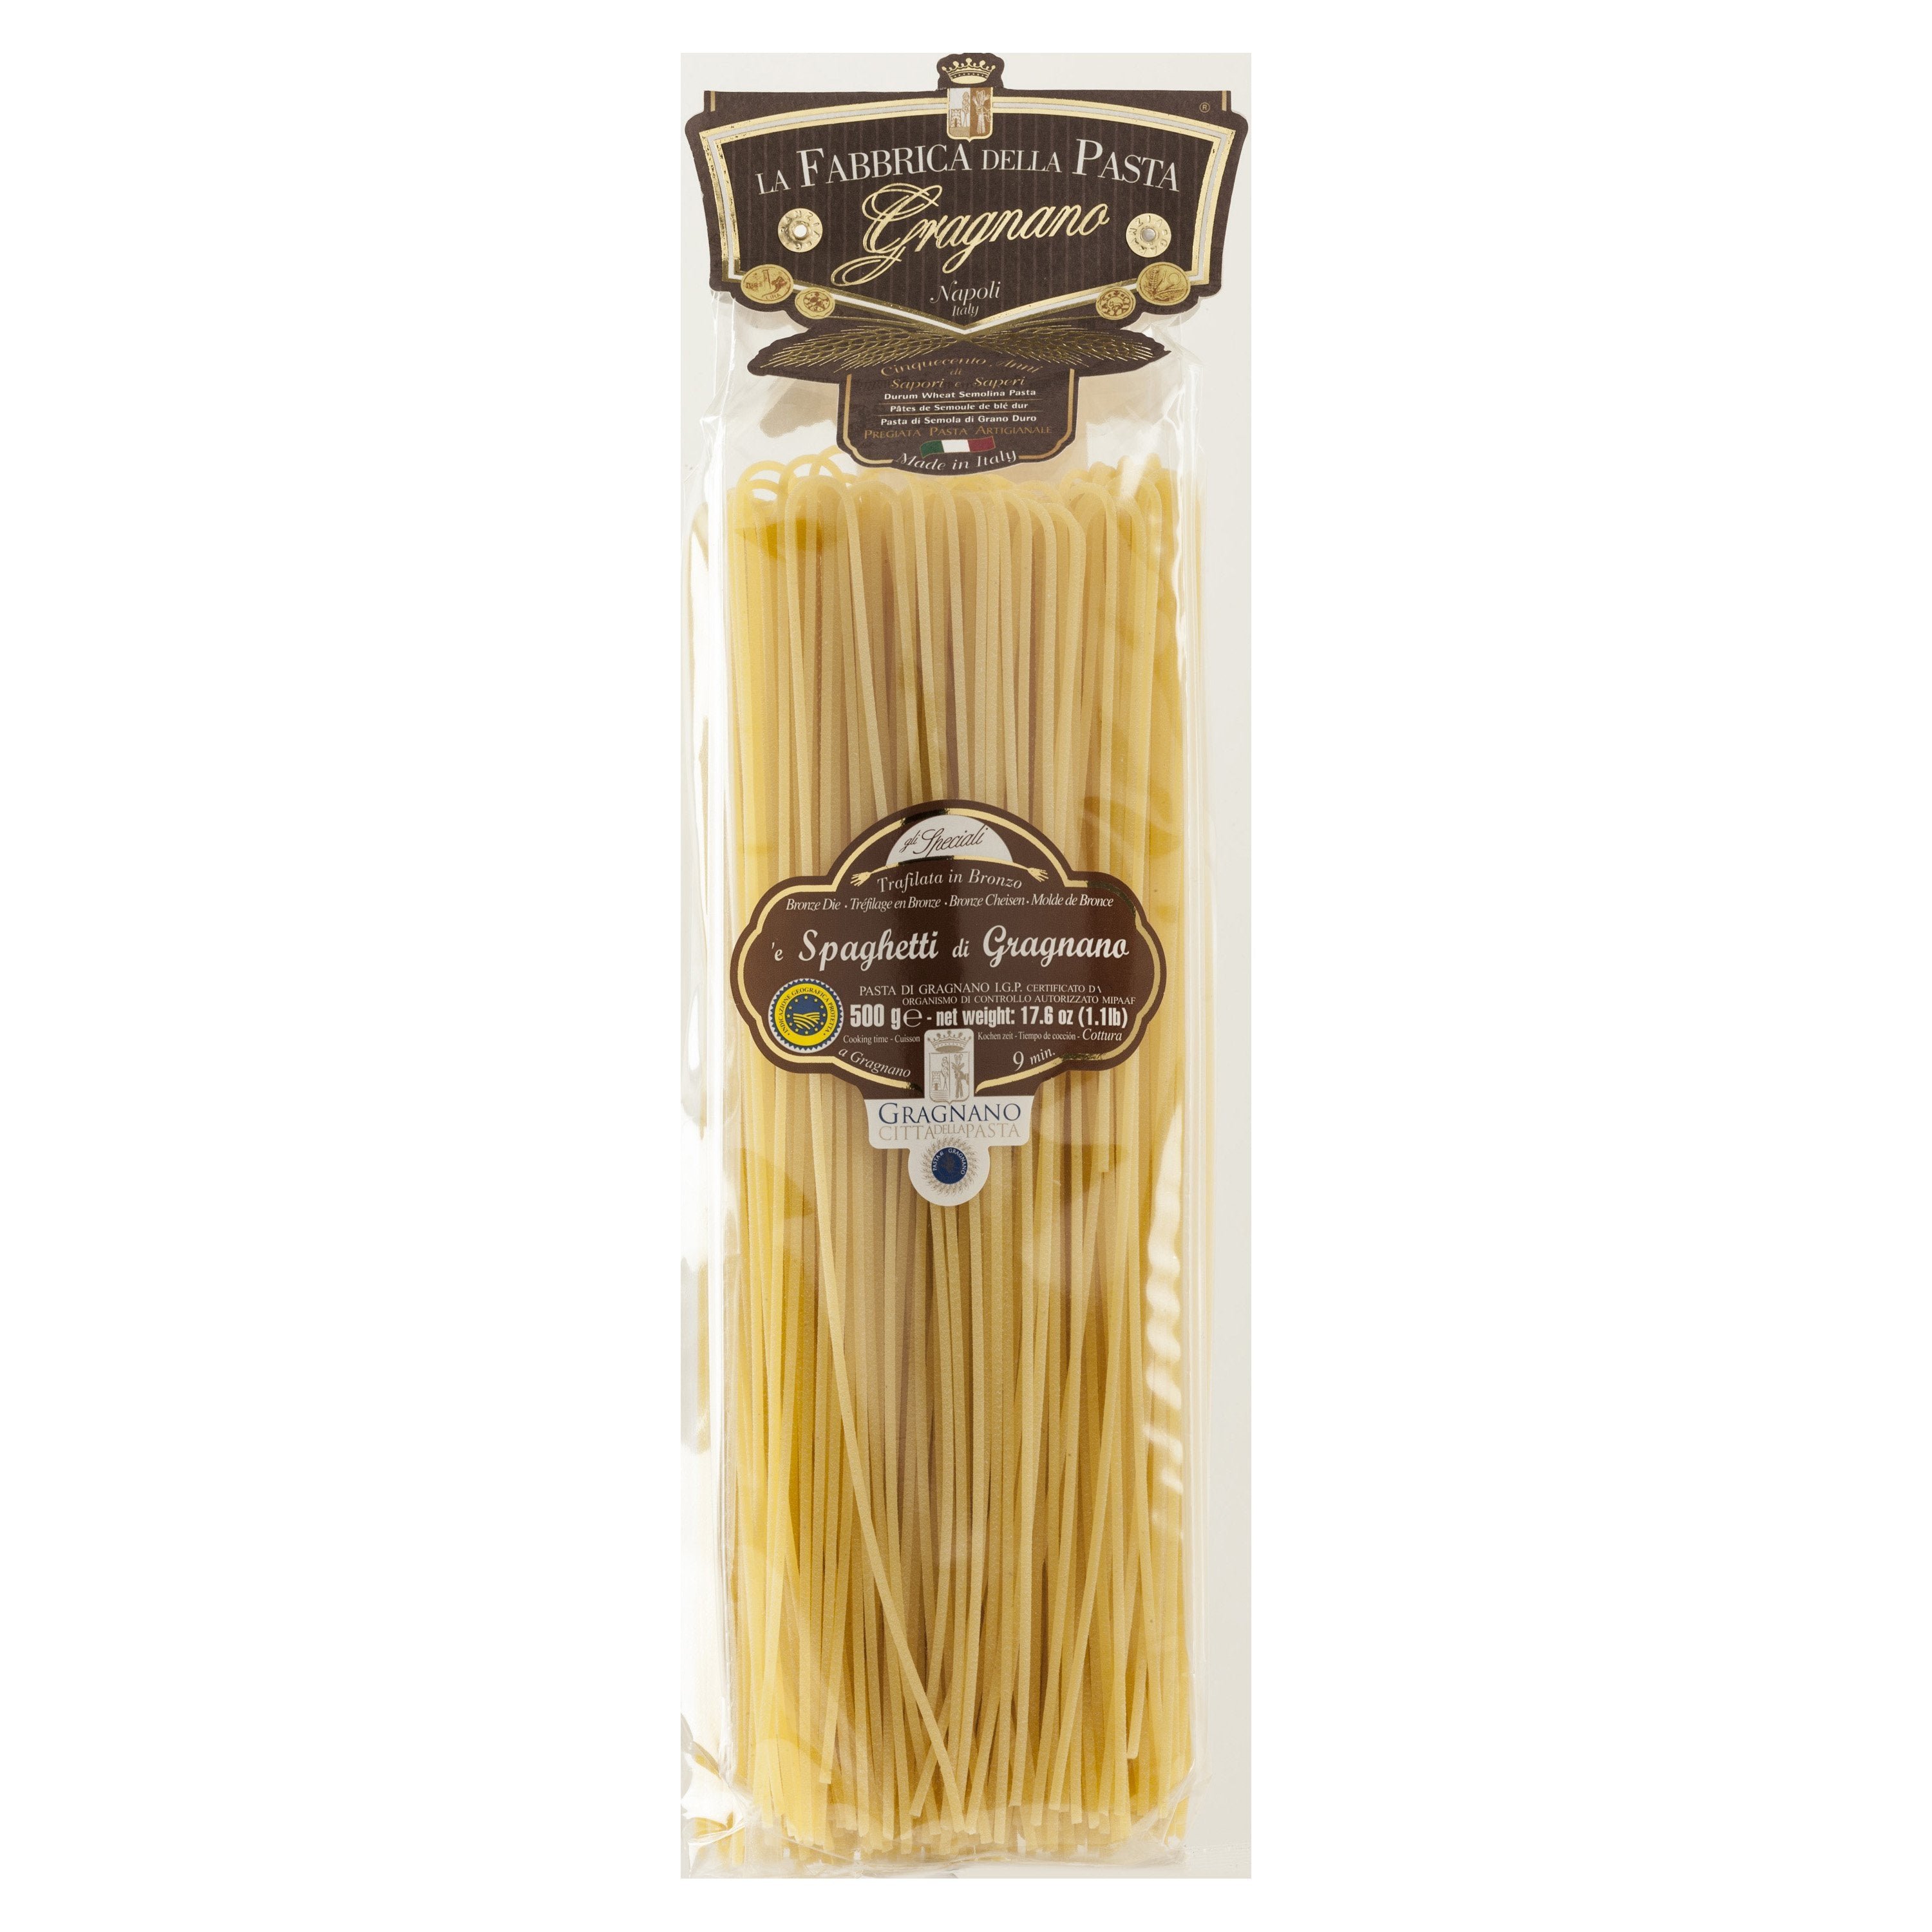 La Fabbrica Della Pasta 'e Spaghetti di Gragnano, 17.6 oz | 500g